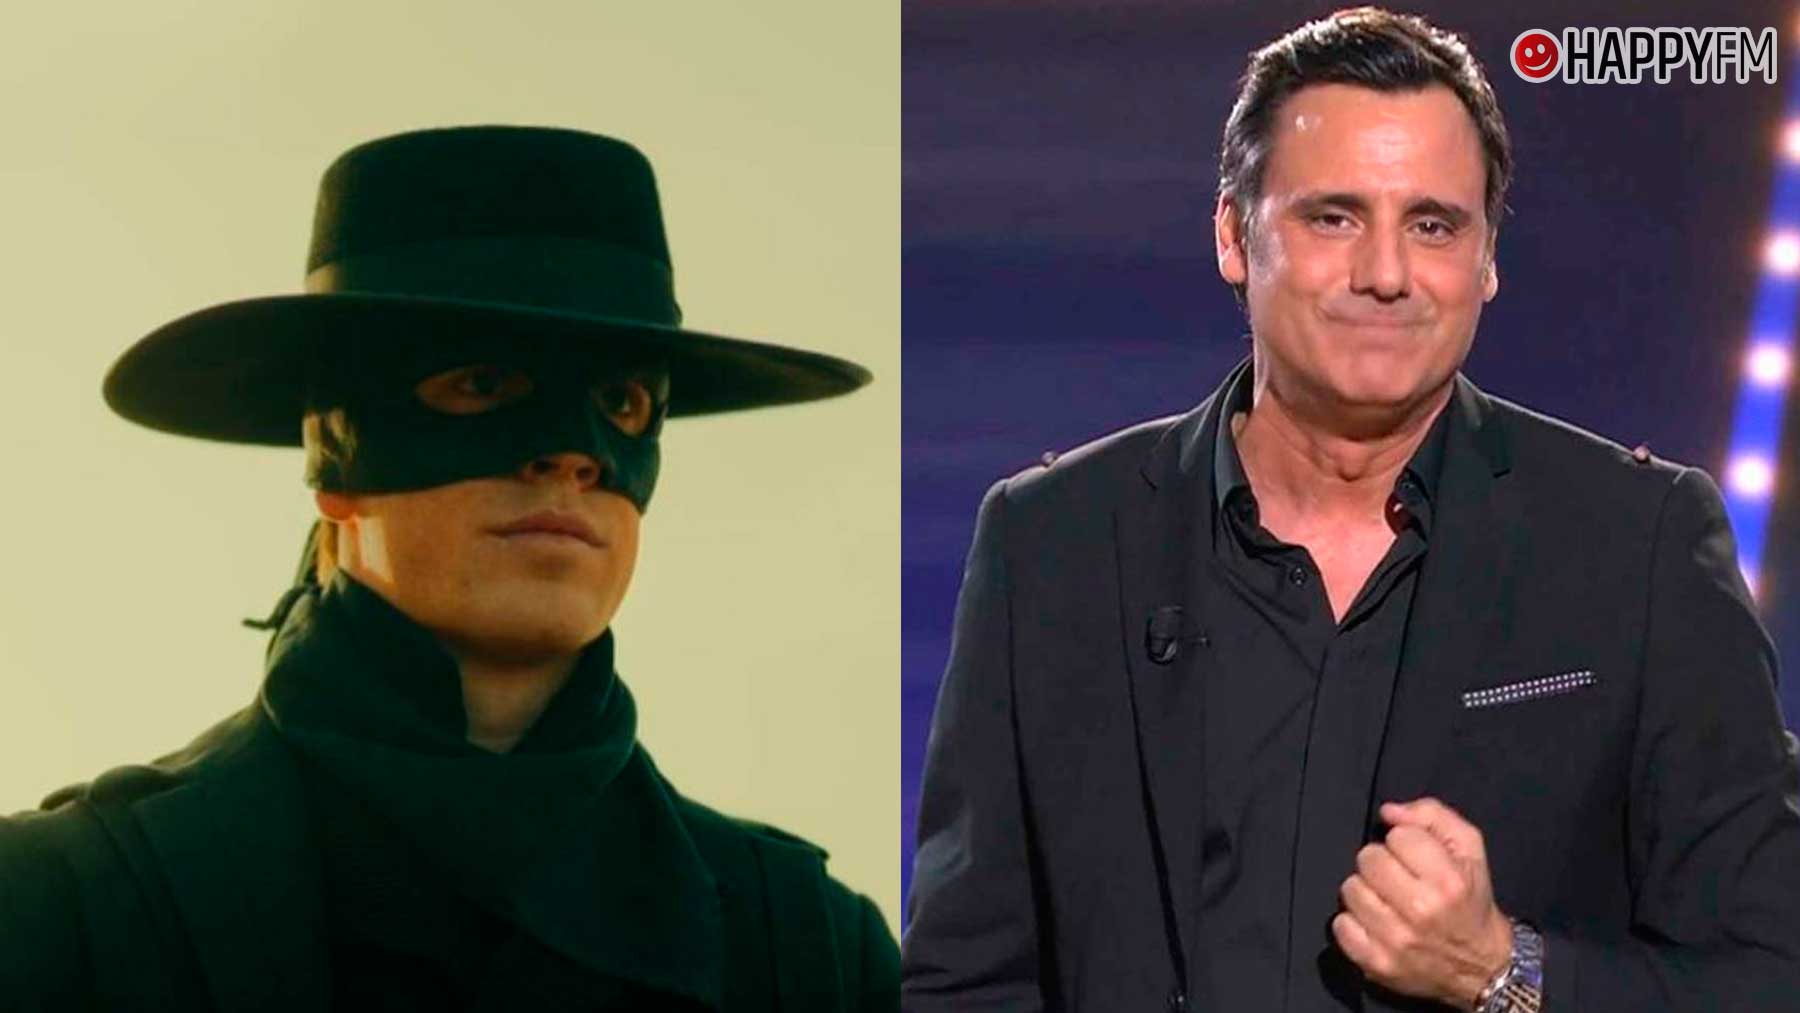 Audiencias TV ayer: ‘GH DÚO’ hace récord, mientras ‘Zorro’ se desangra en La 1.